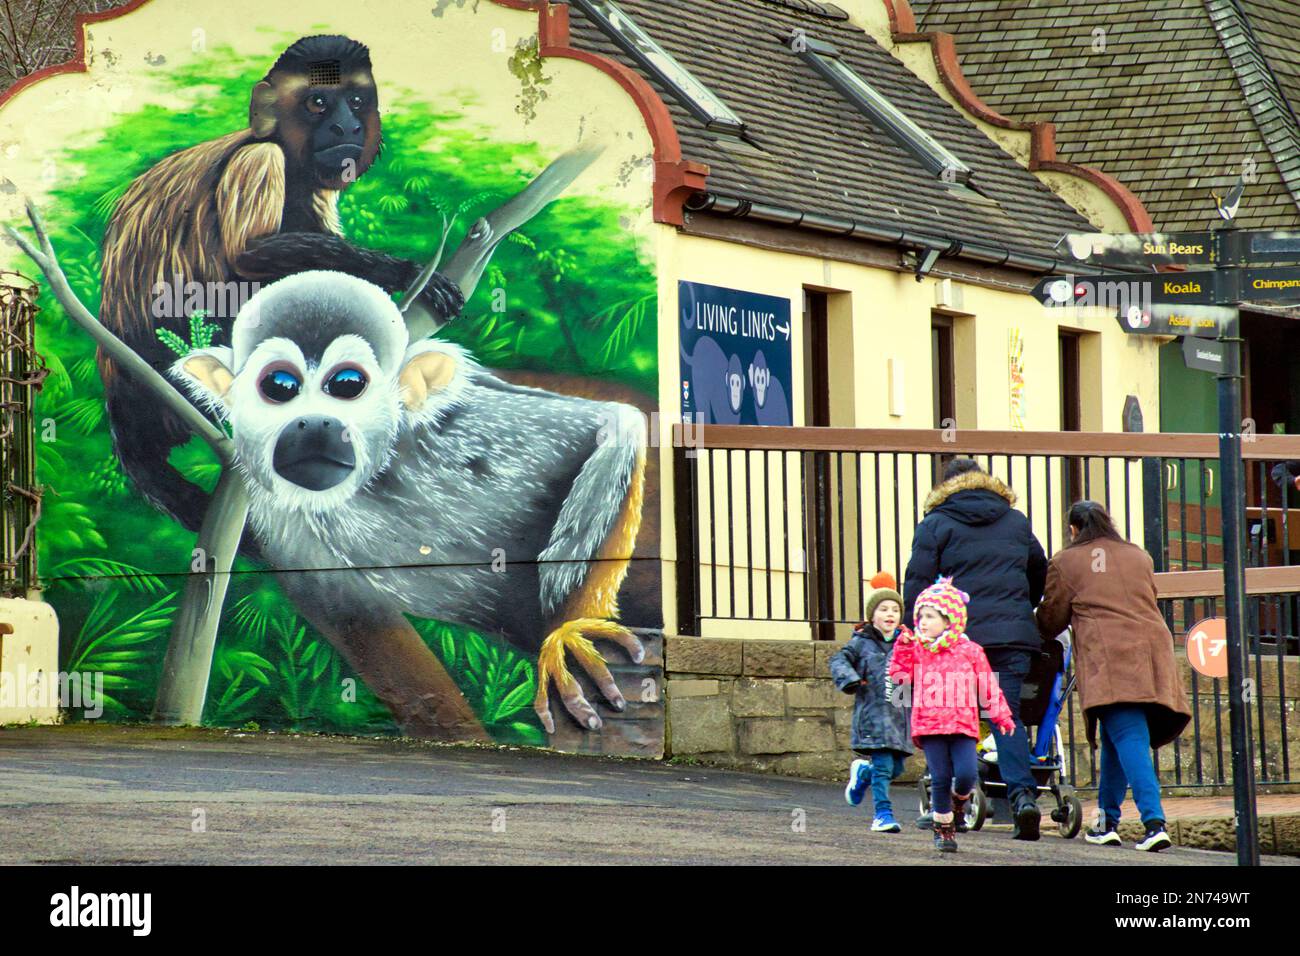 tourists enjoy walking around edinburgh zoo Stock Photo